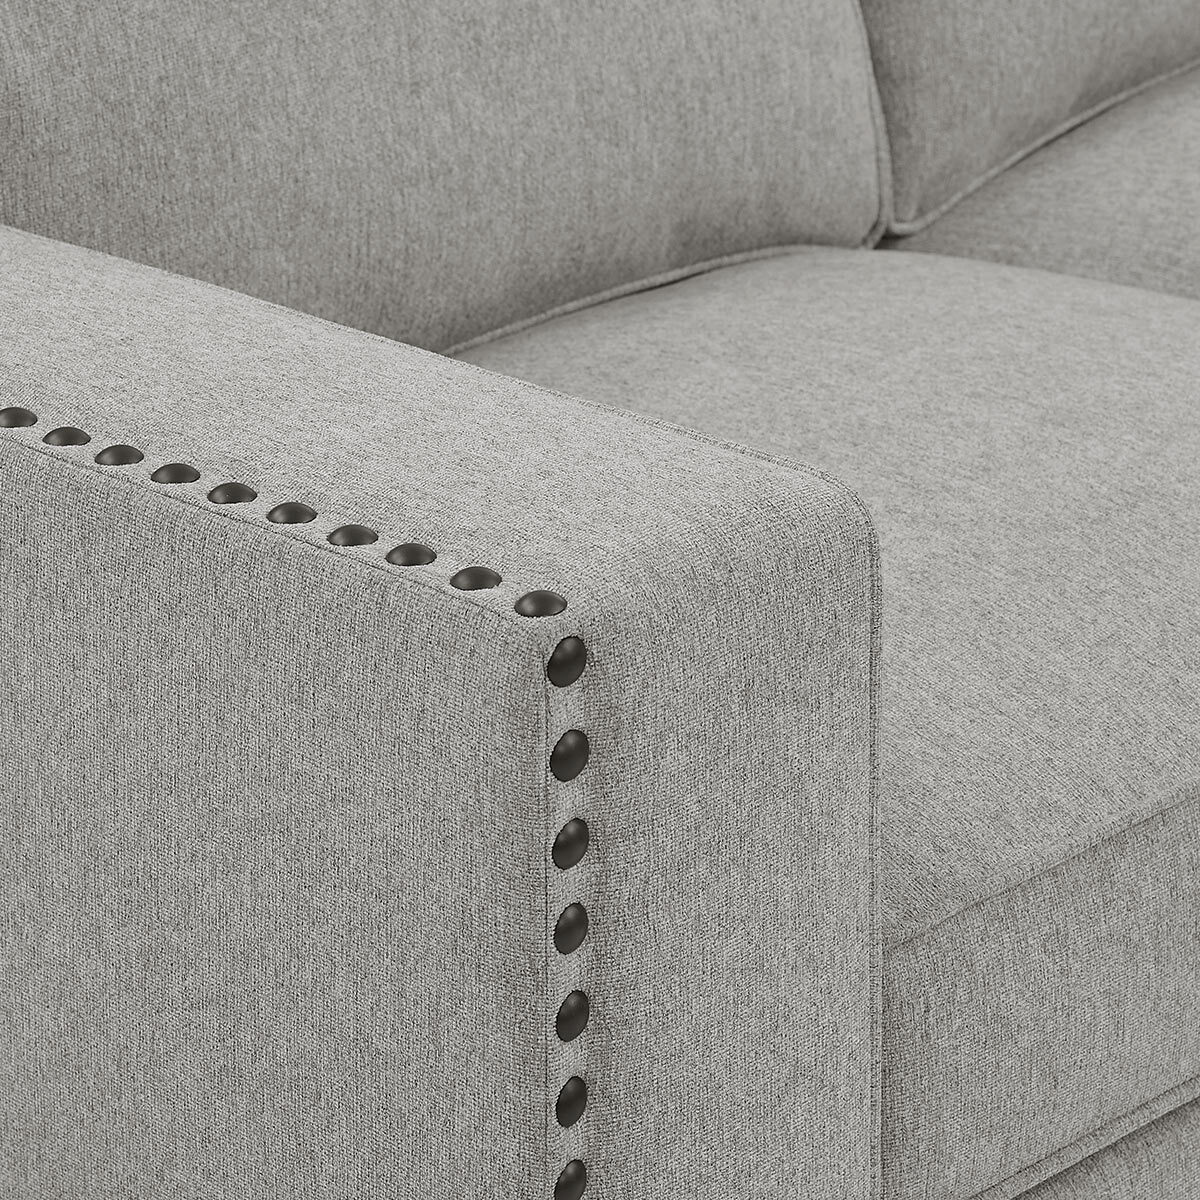 True Innovations Ellen Light Grey Fabric Corner Sofa 